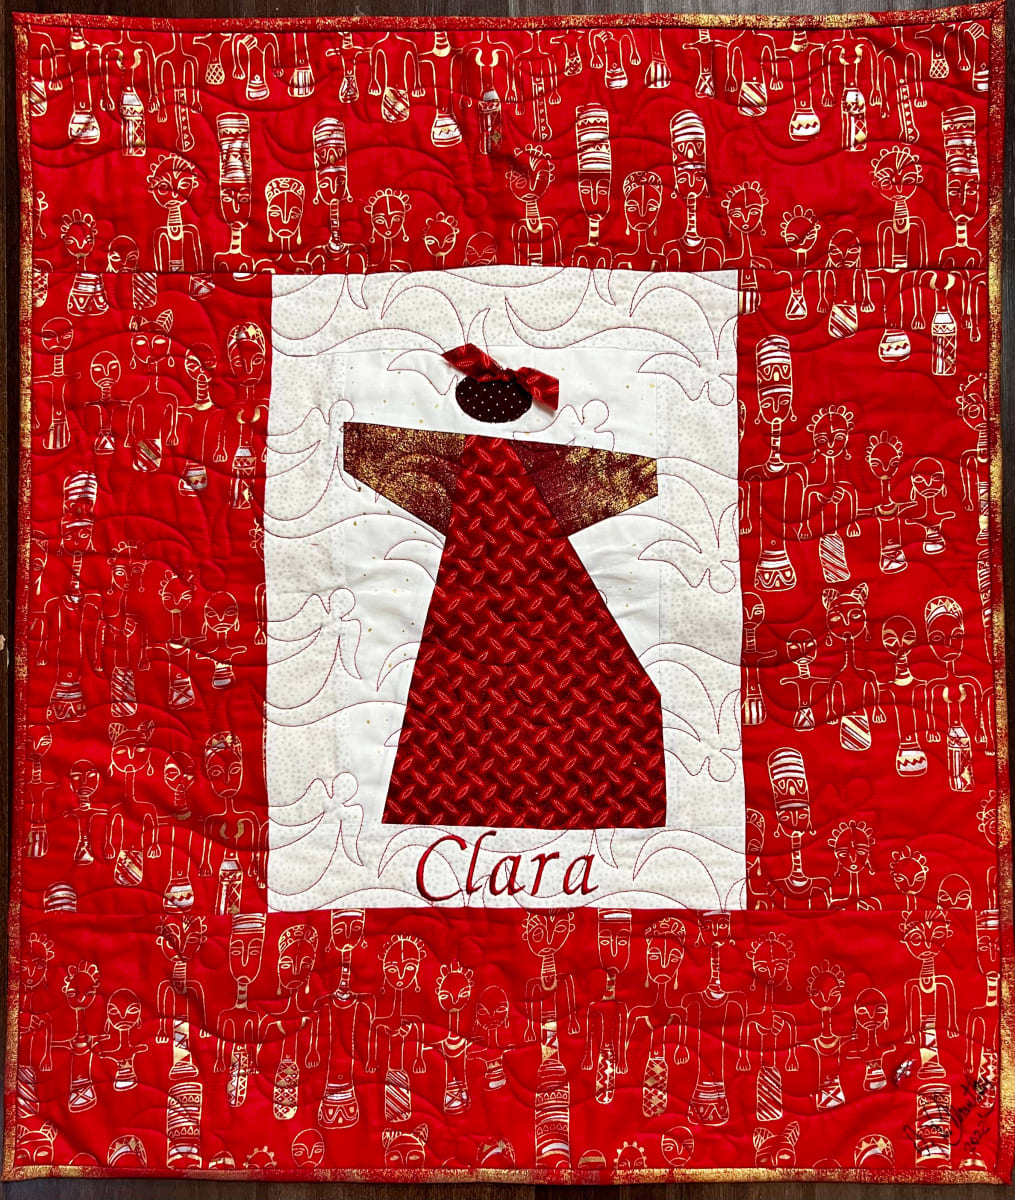 Clara Angel by O.V. Brantley  Image:  Clara Angel